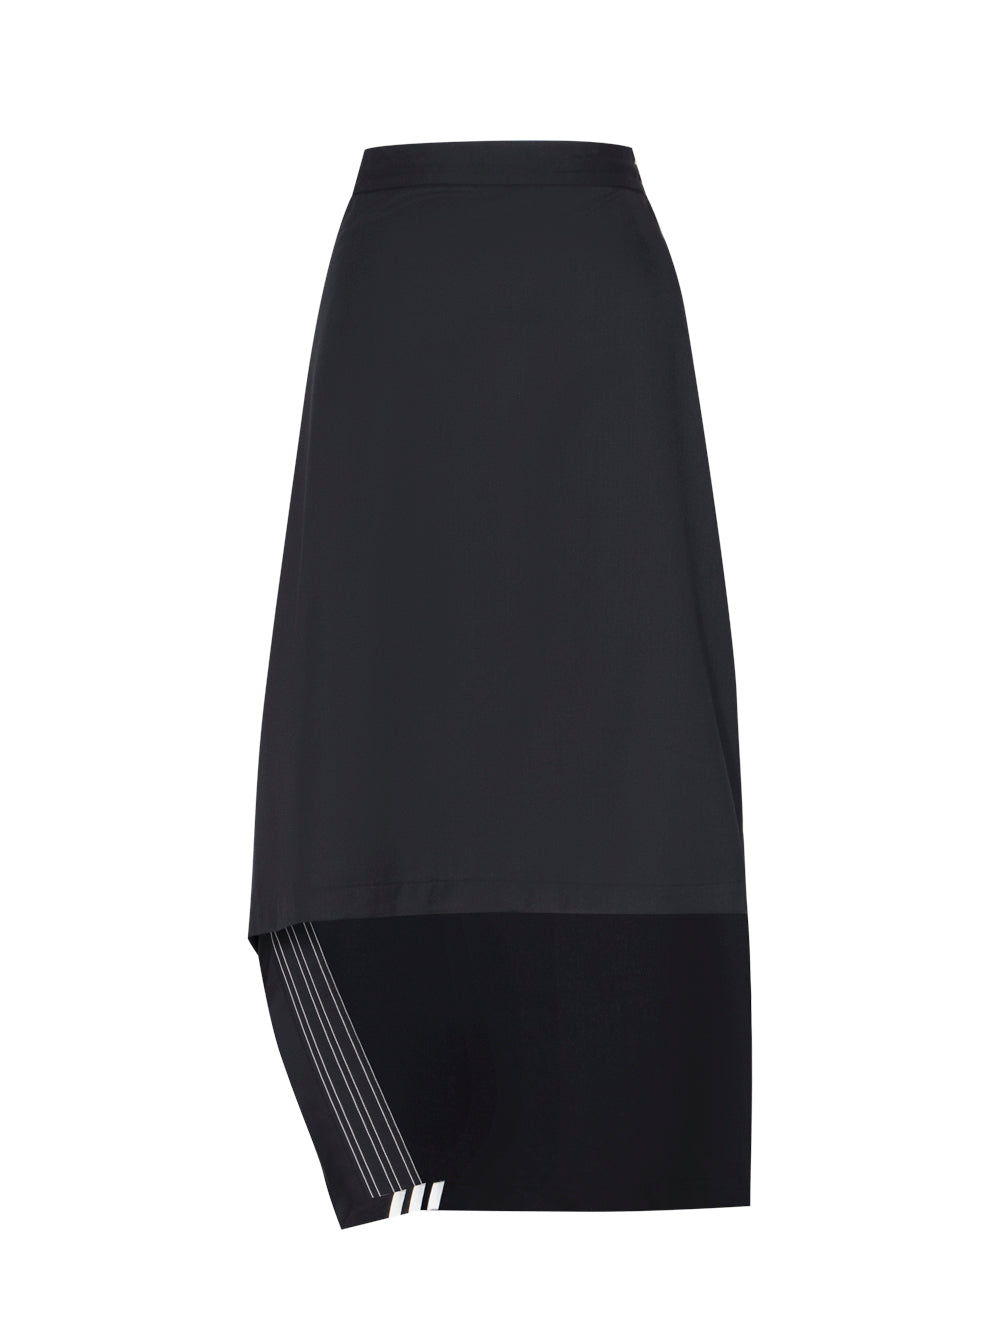 Refined Woven Skirt (Black)